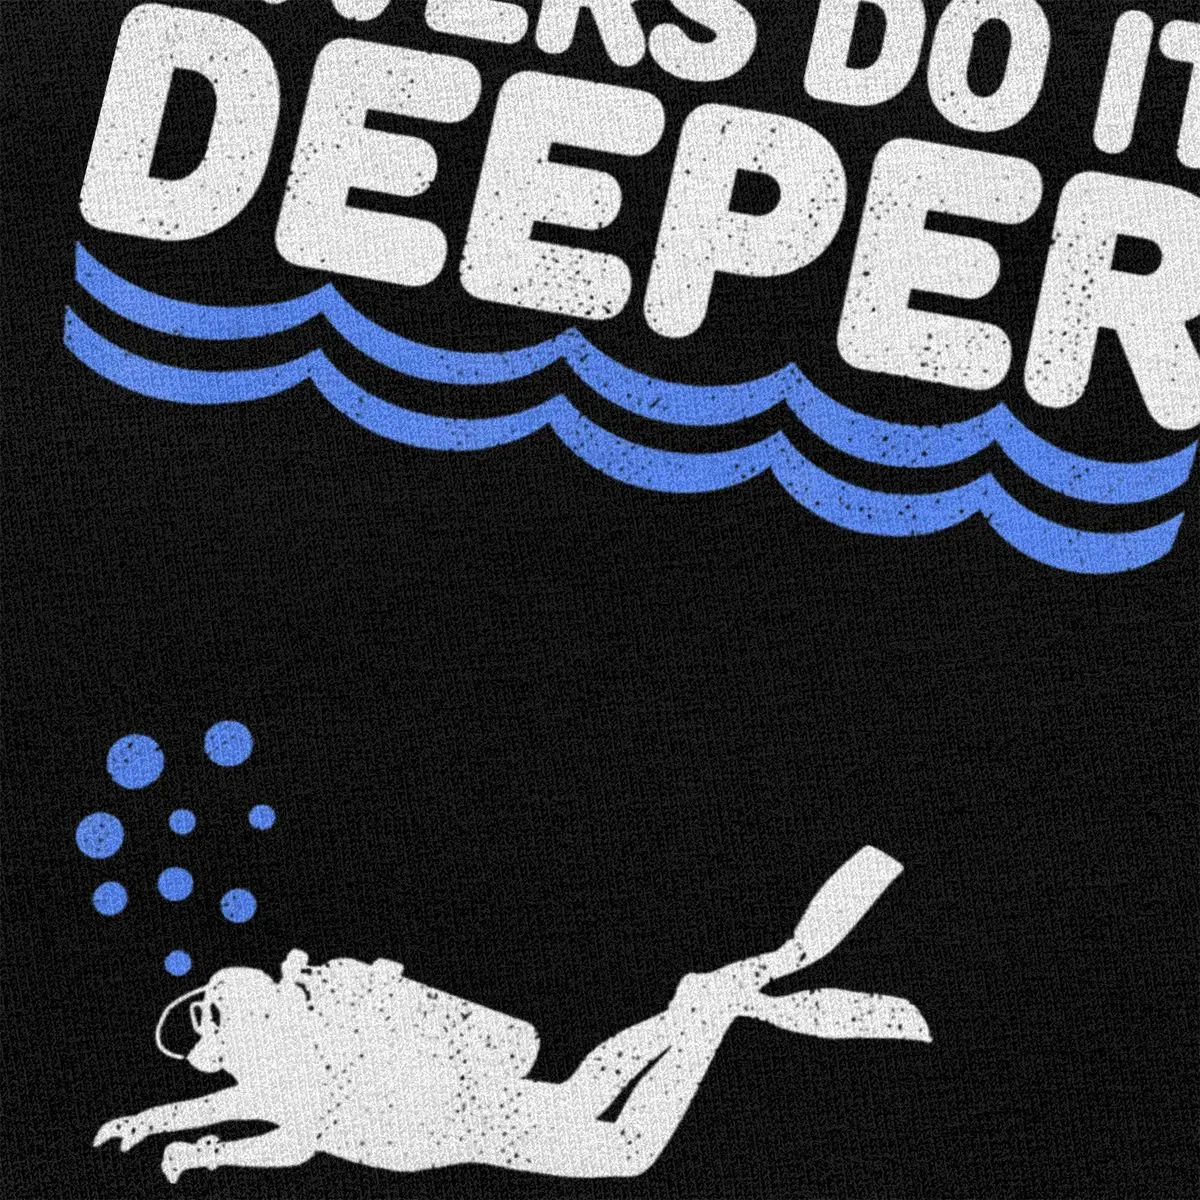 Unic Scuba Diving Tee Topuri pentru Bărbați Mâneci Scurte Scafandri Face mai Adânc Aventură Subacvatică T-shirt Bumbac se arunca cu capul T shirt Îmbrăcăminte